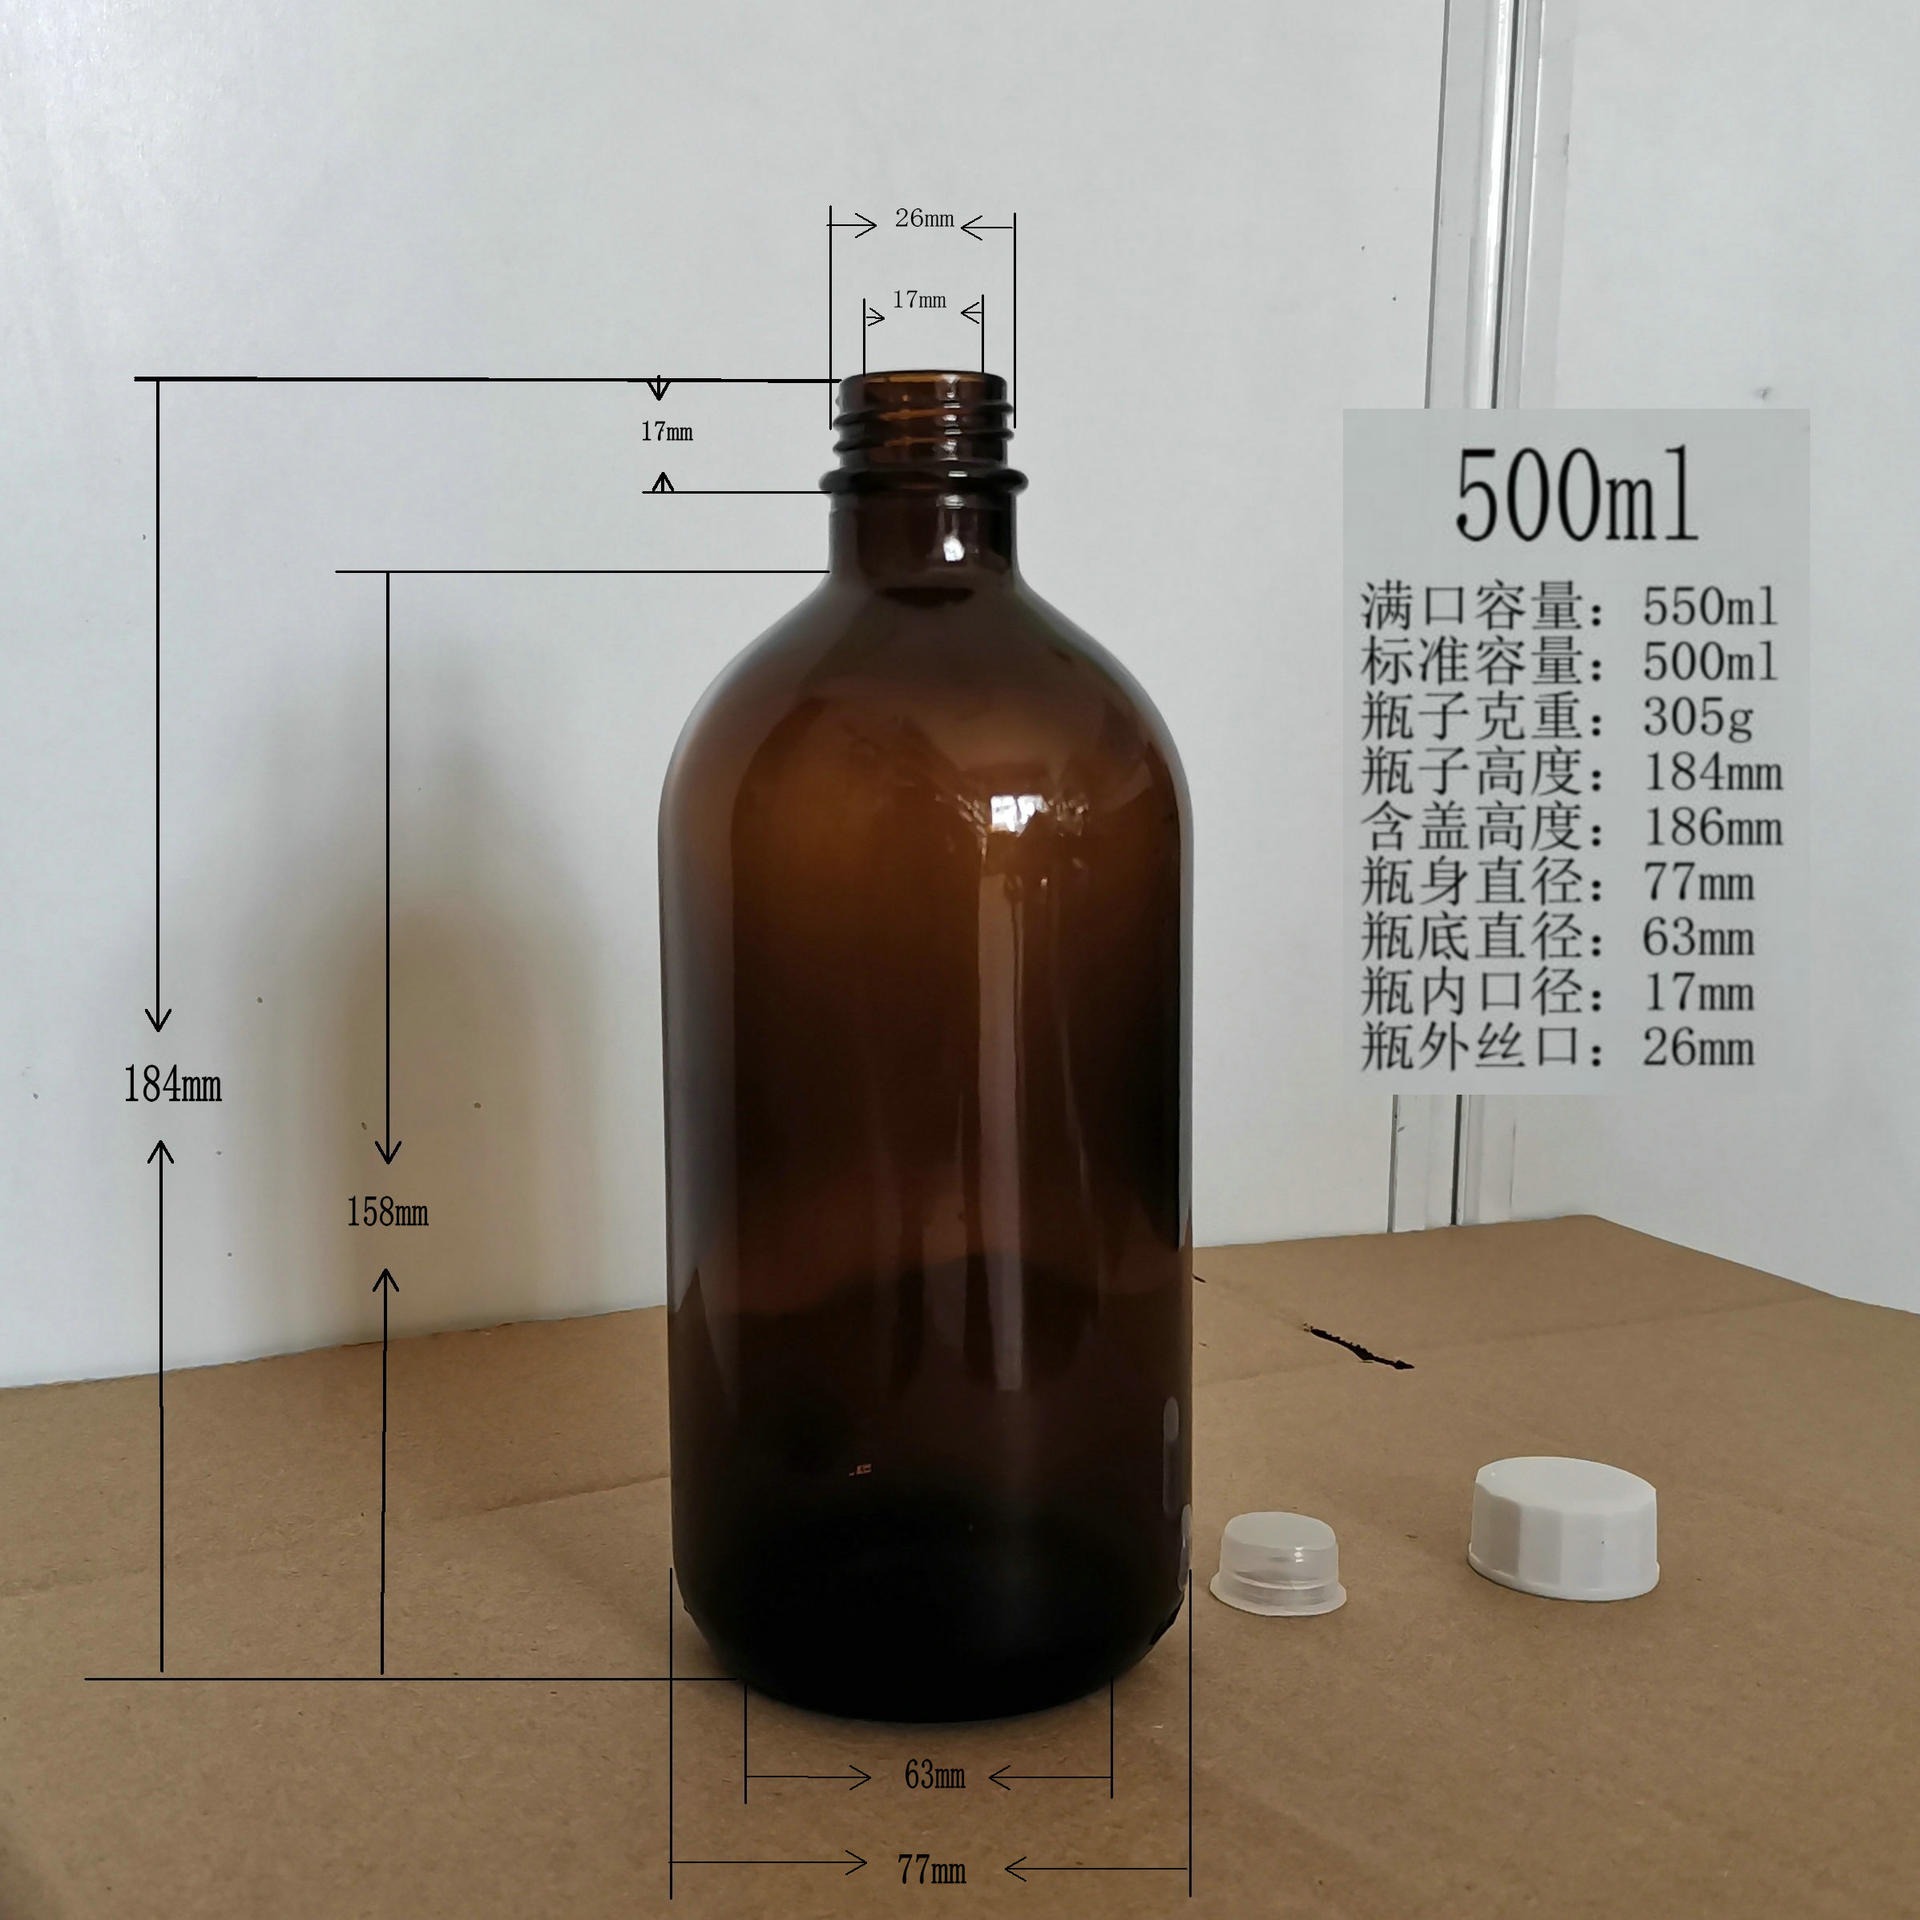 口服液试剂玻璃瓶一斤装生产厂家棕色100ml200ml250ml300ml400ml500ml1000ml茶色玻璃瓶隆安